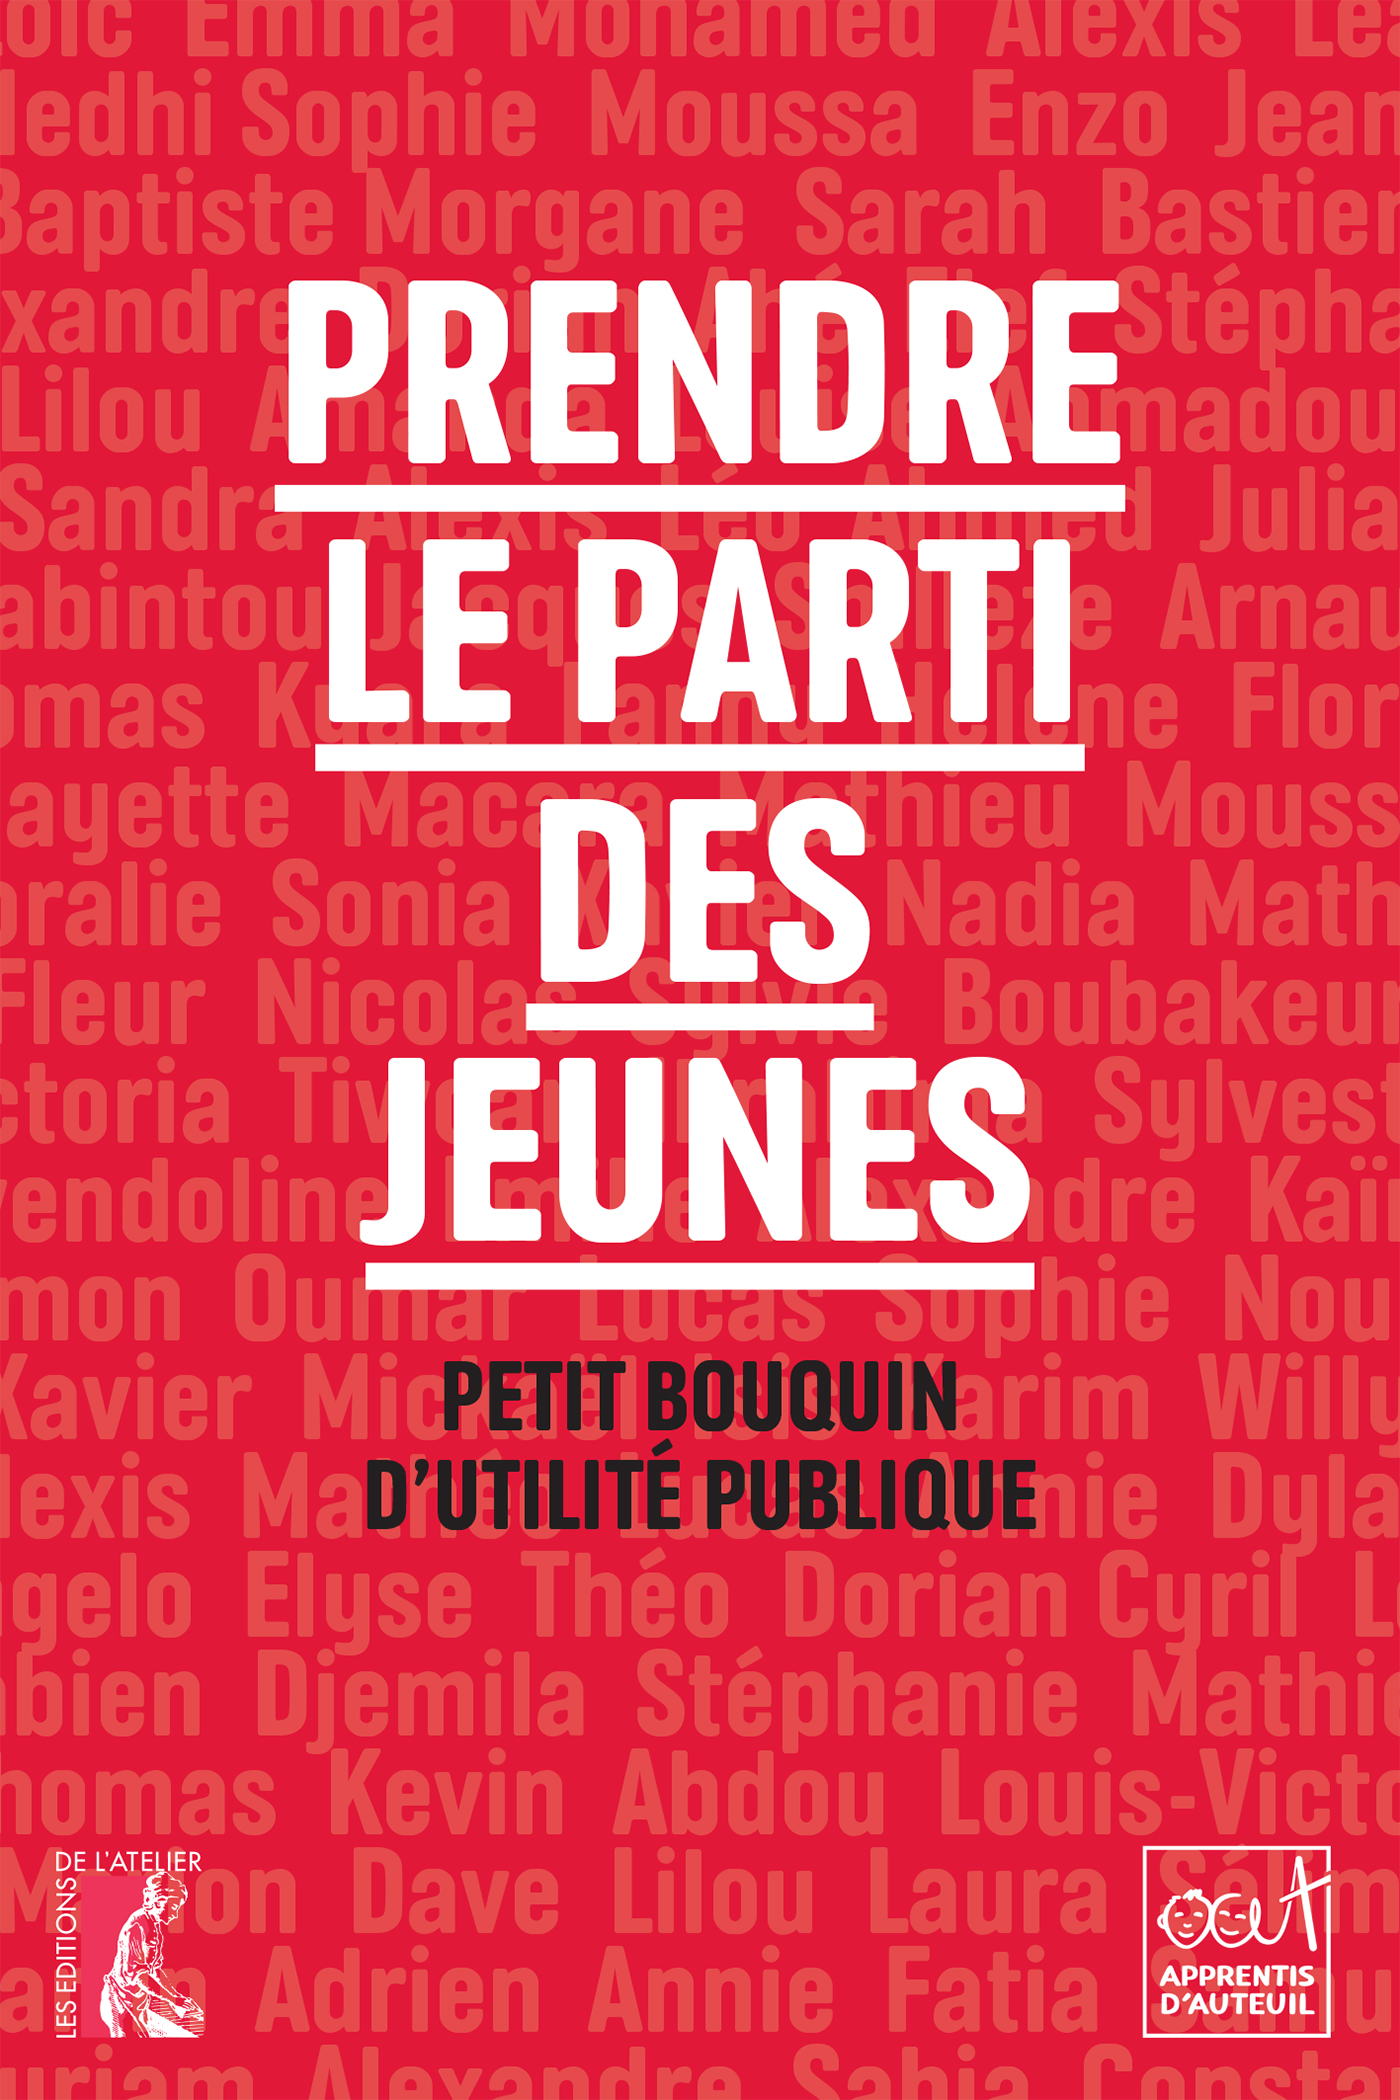 Prendre le parti des jeunes - Les Apprentis d'Auteuil - Éditions de l'Atelier